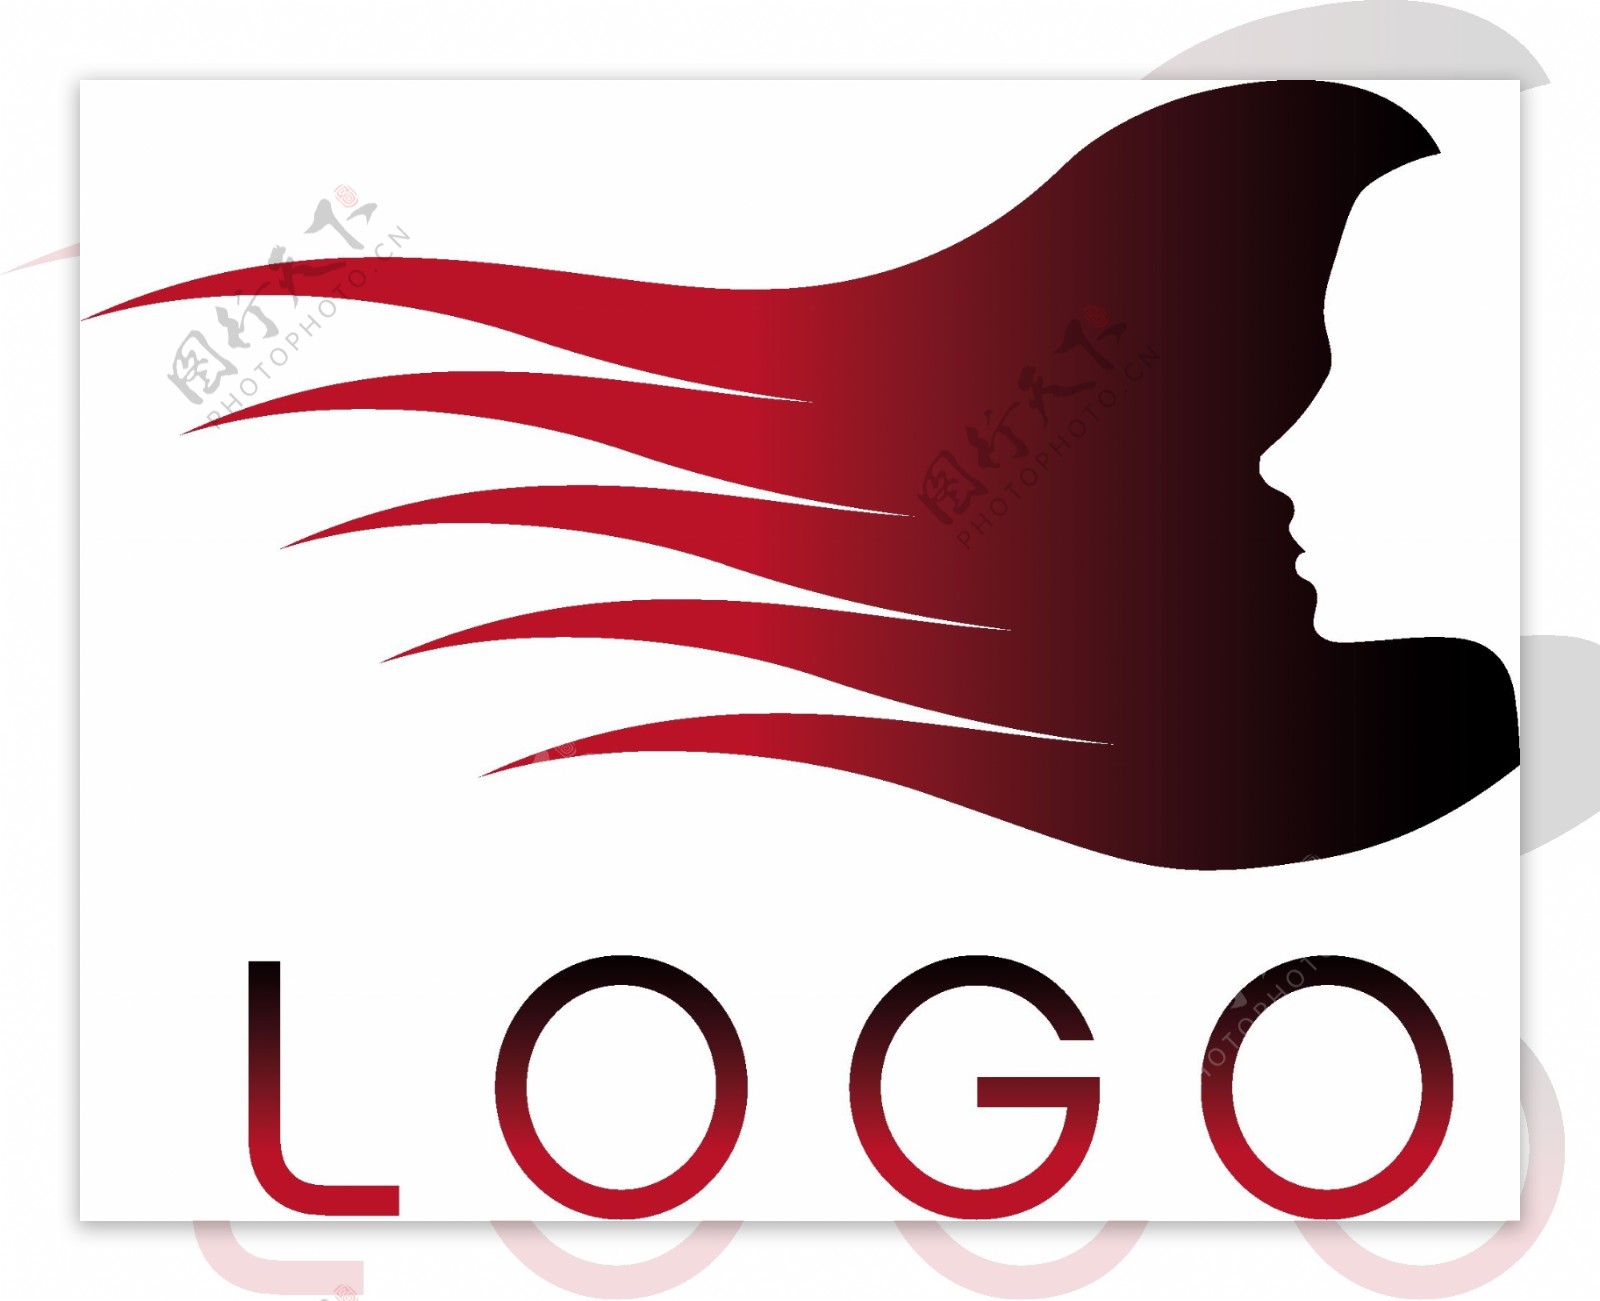 一款主题鲜明的美发店logo矢量素材